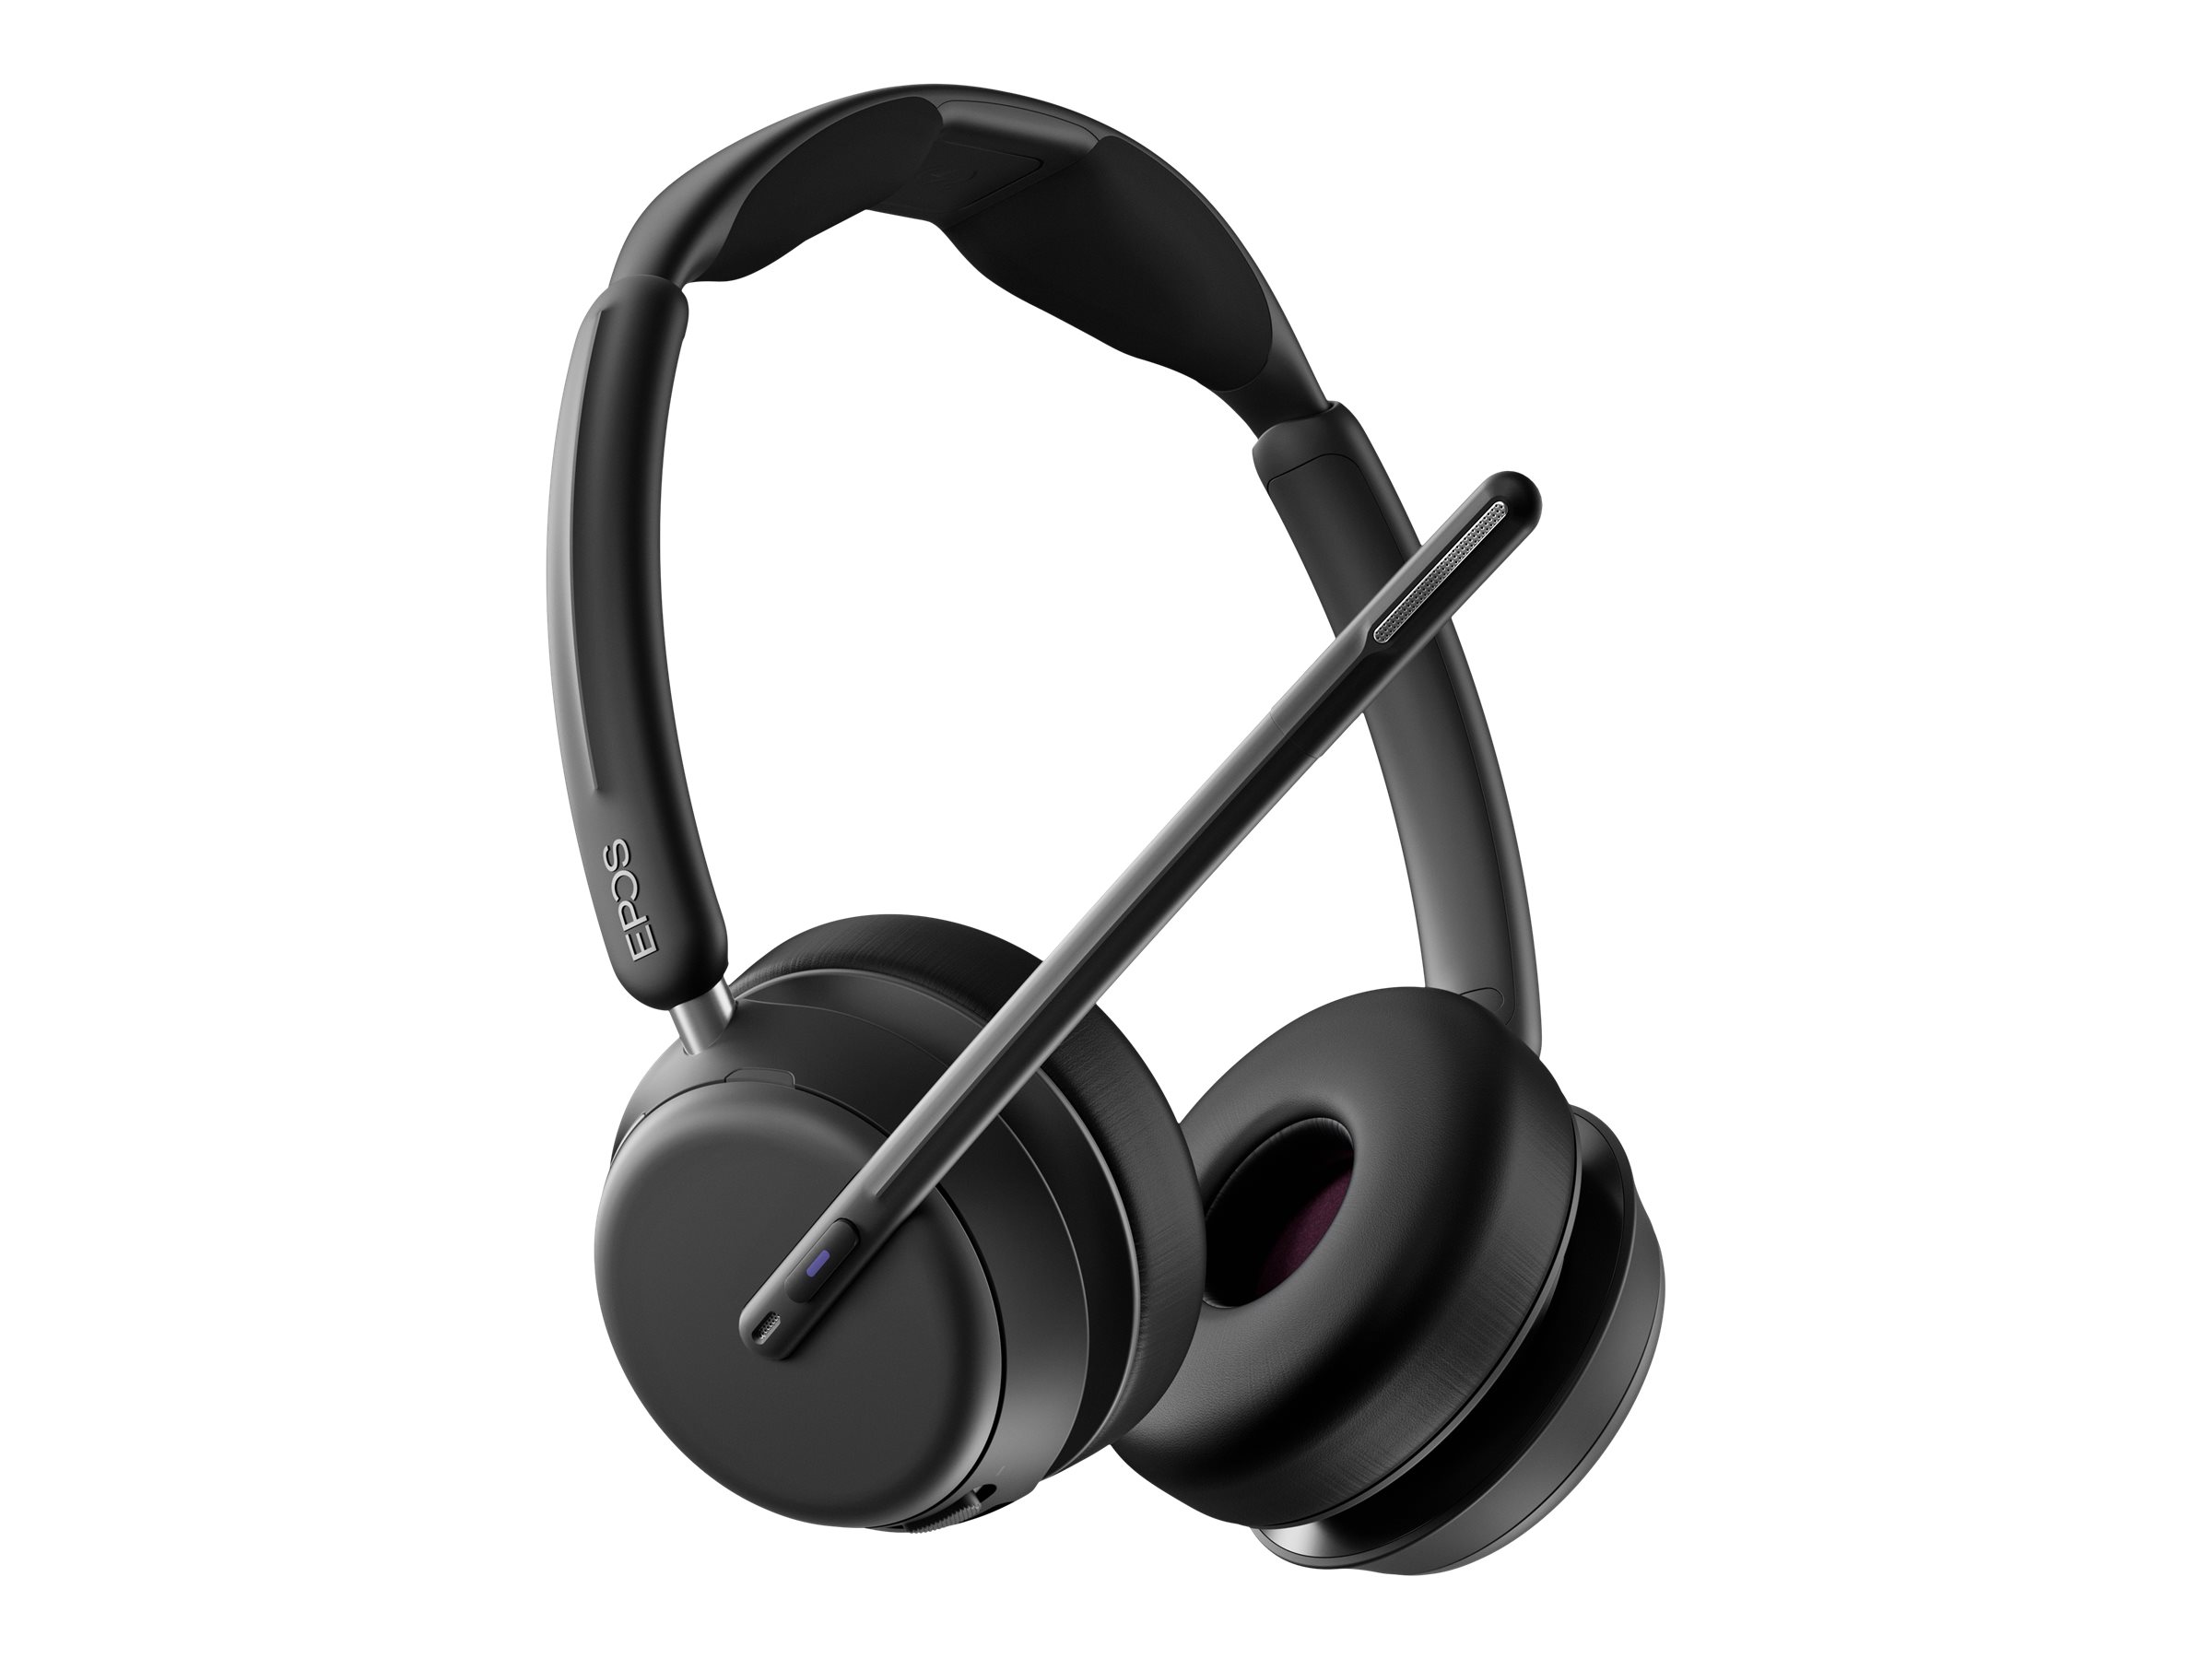 EPOS IMPACT 1061 - Micro-casque - sur-oreille - Bluetooth - sans fil, filaire - 1001135 - Écouteurs